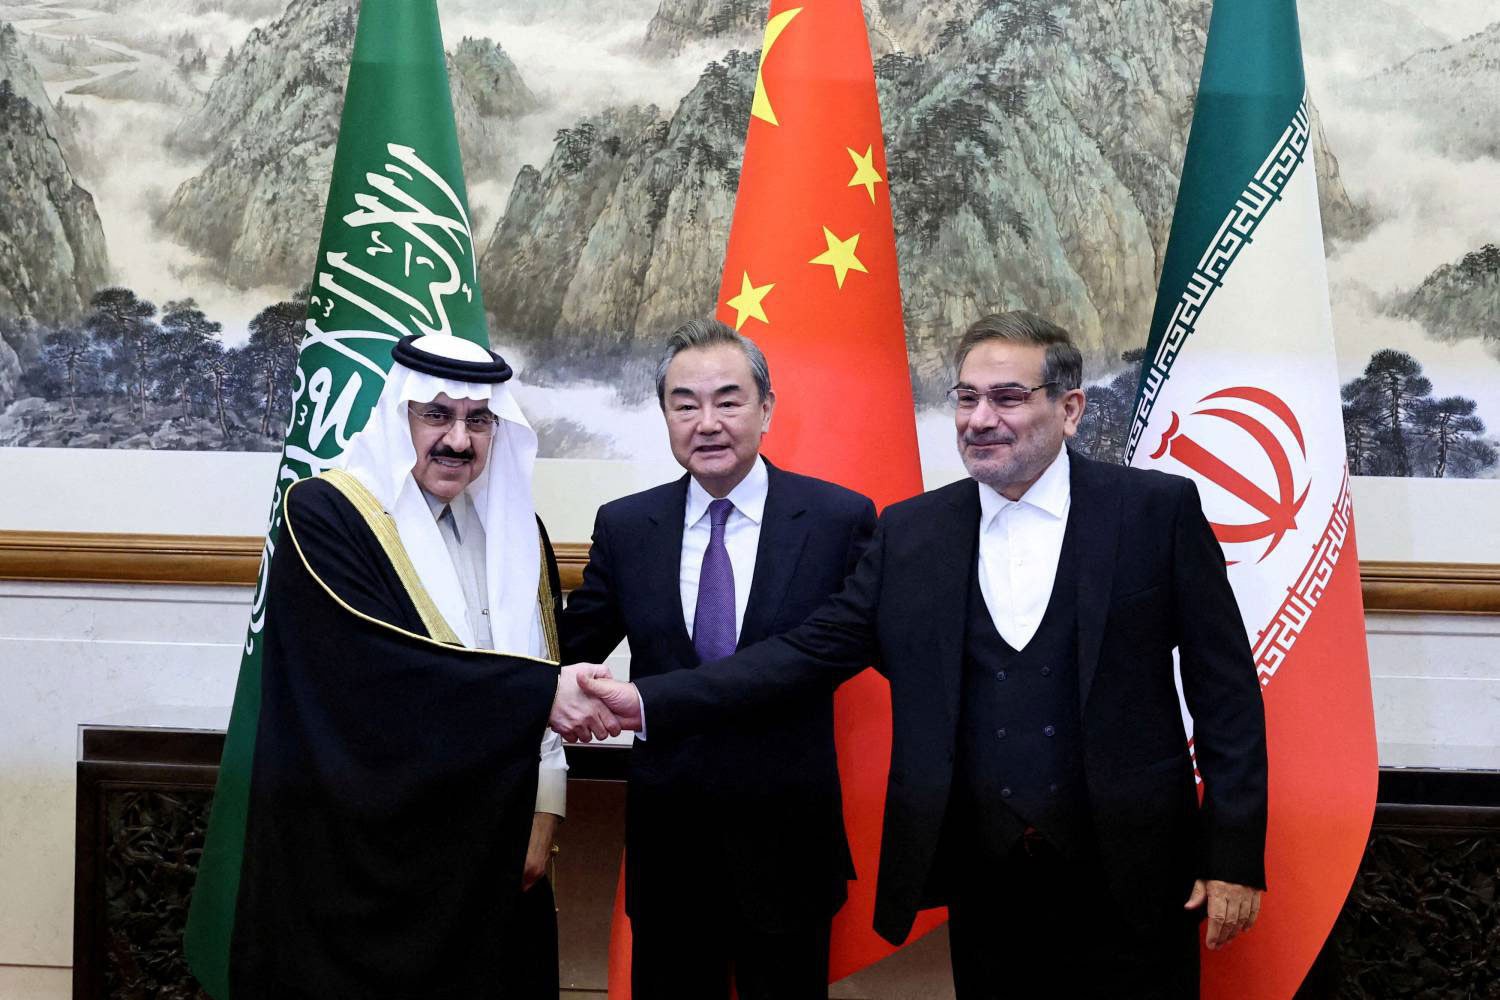 تحرص الصين على إنجاح الاتفاق بين السعودية وإيران لتفتح بذلك المجال لأن تكون لاعبا رئيسيا في المنطقة